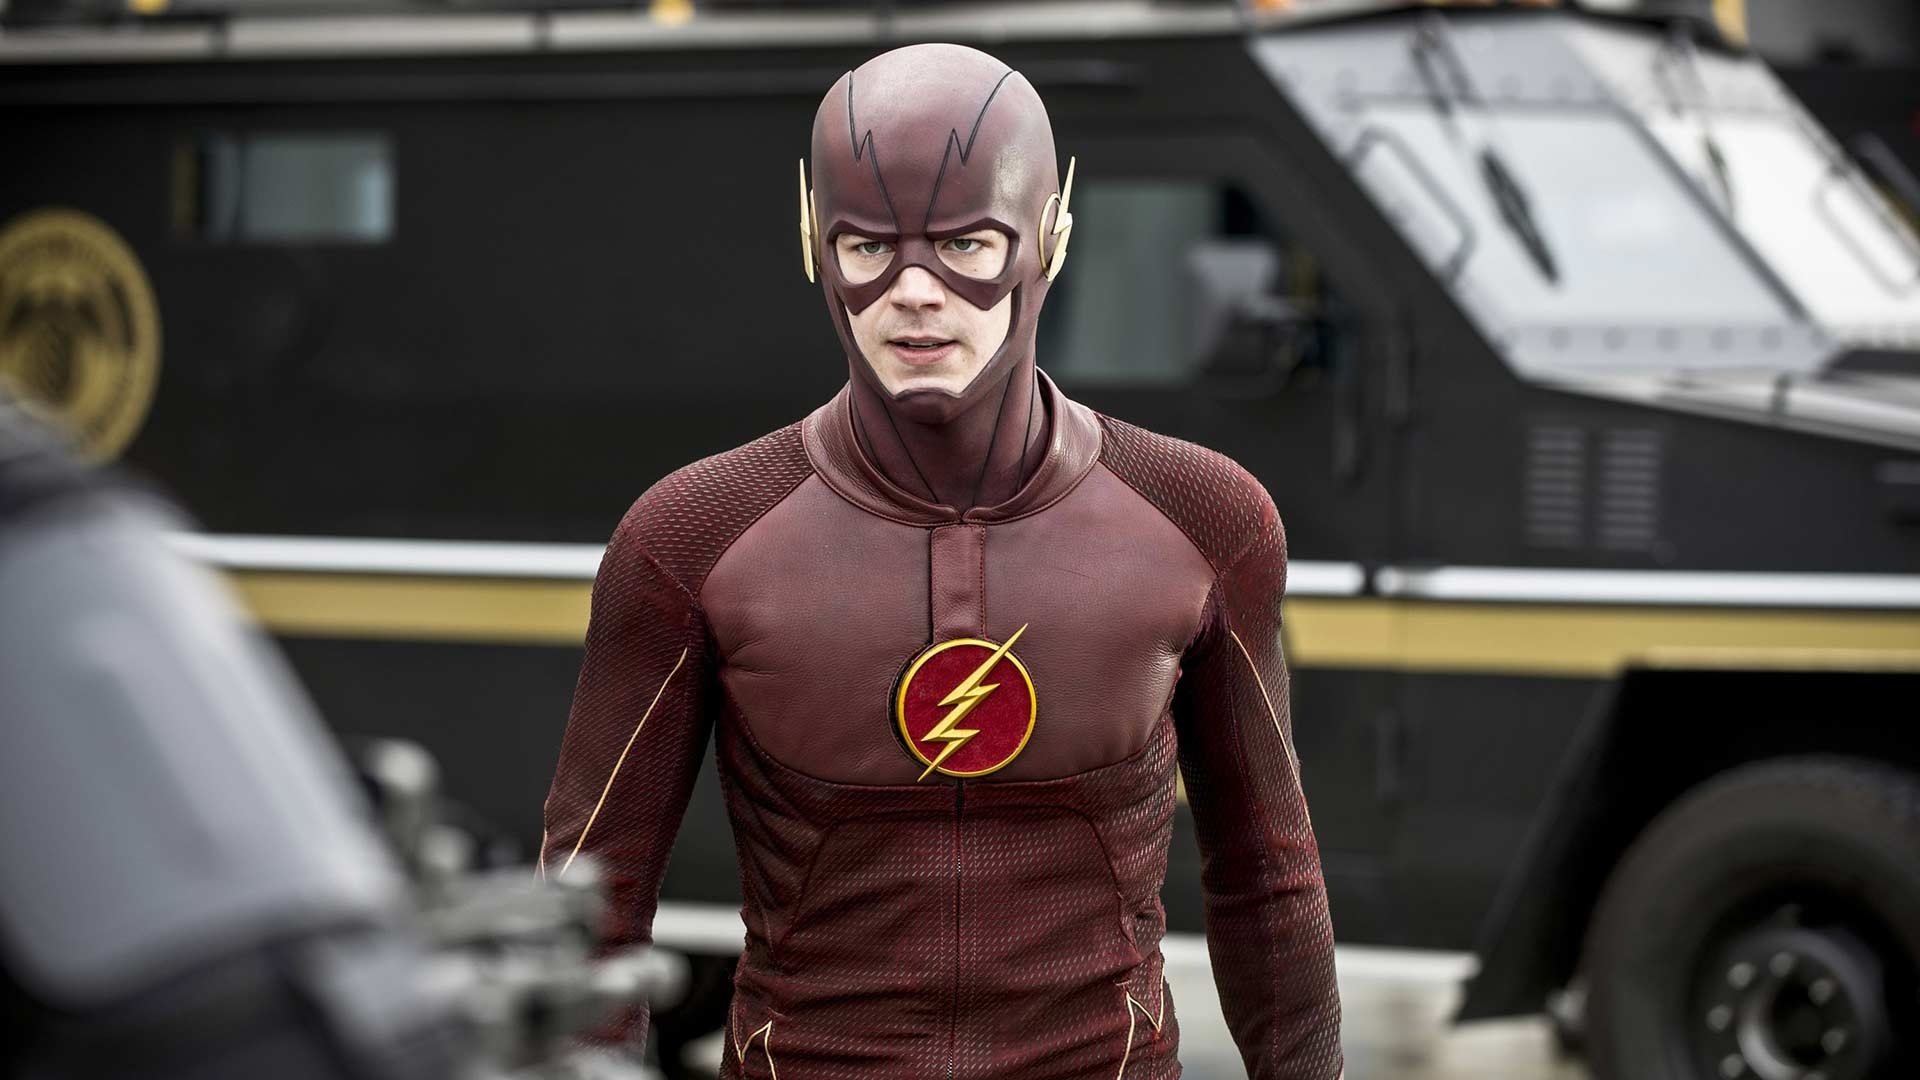 Watch The Flash Season 1 Episode 21 Online - Stream Full Episodes